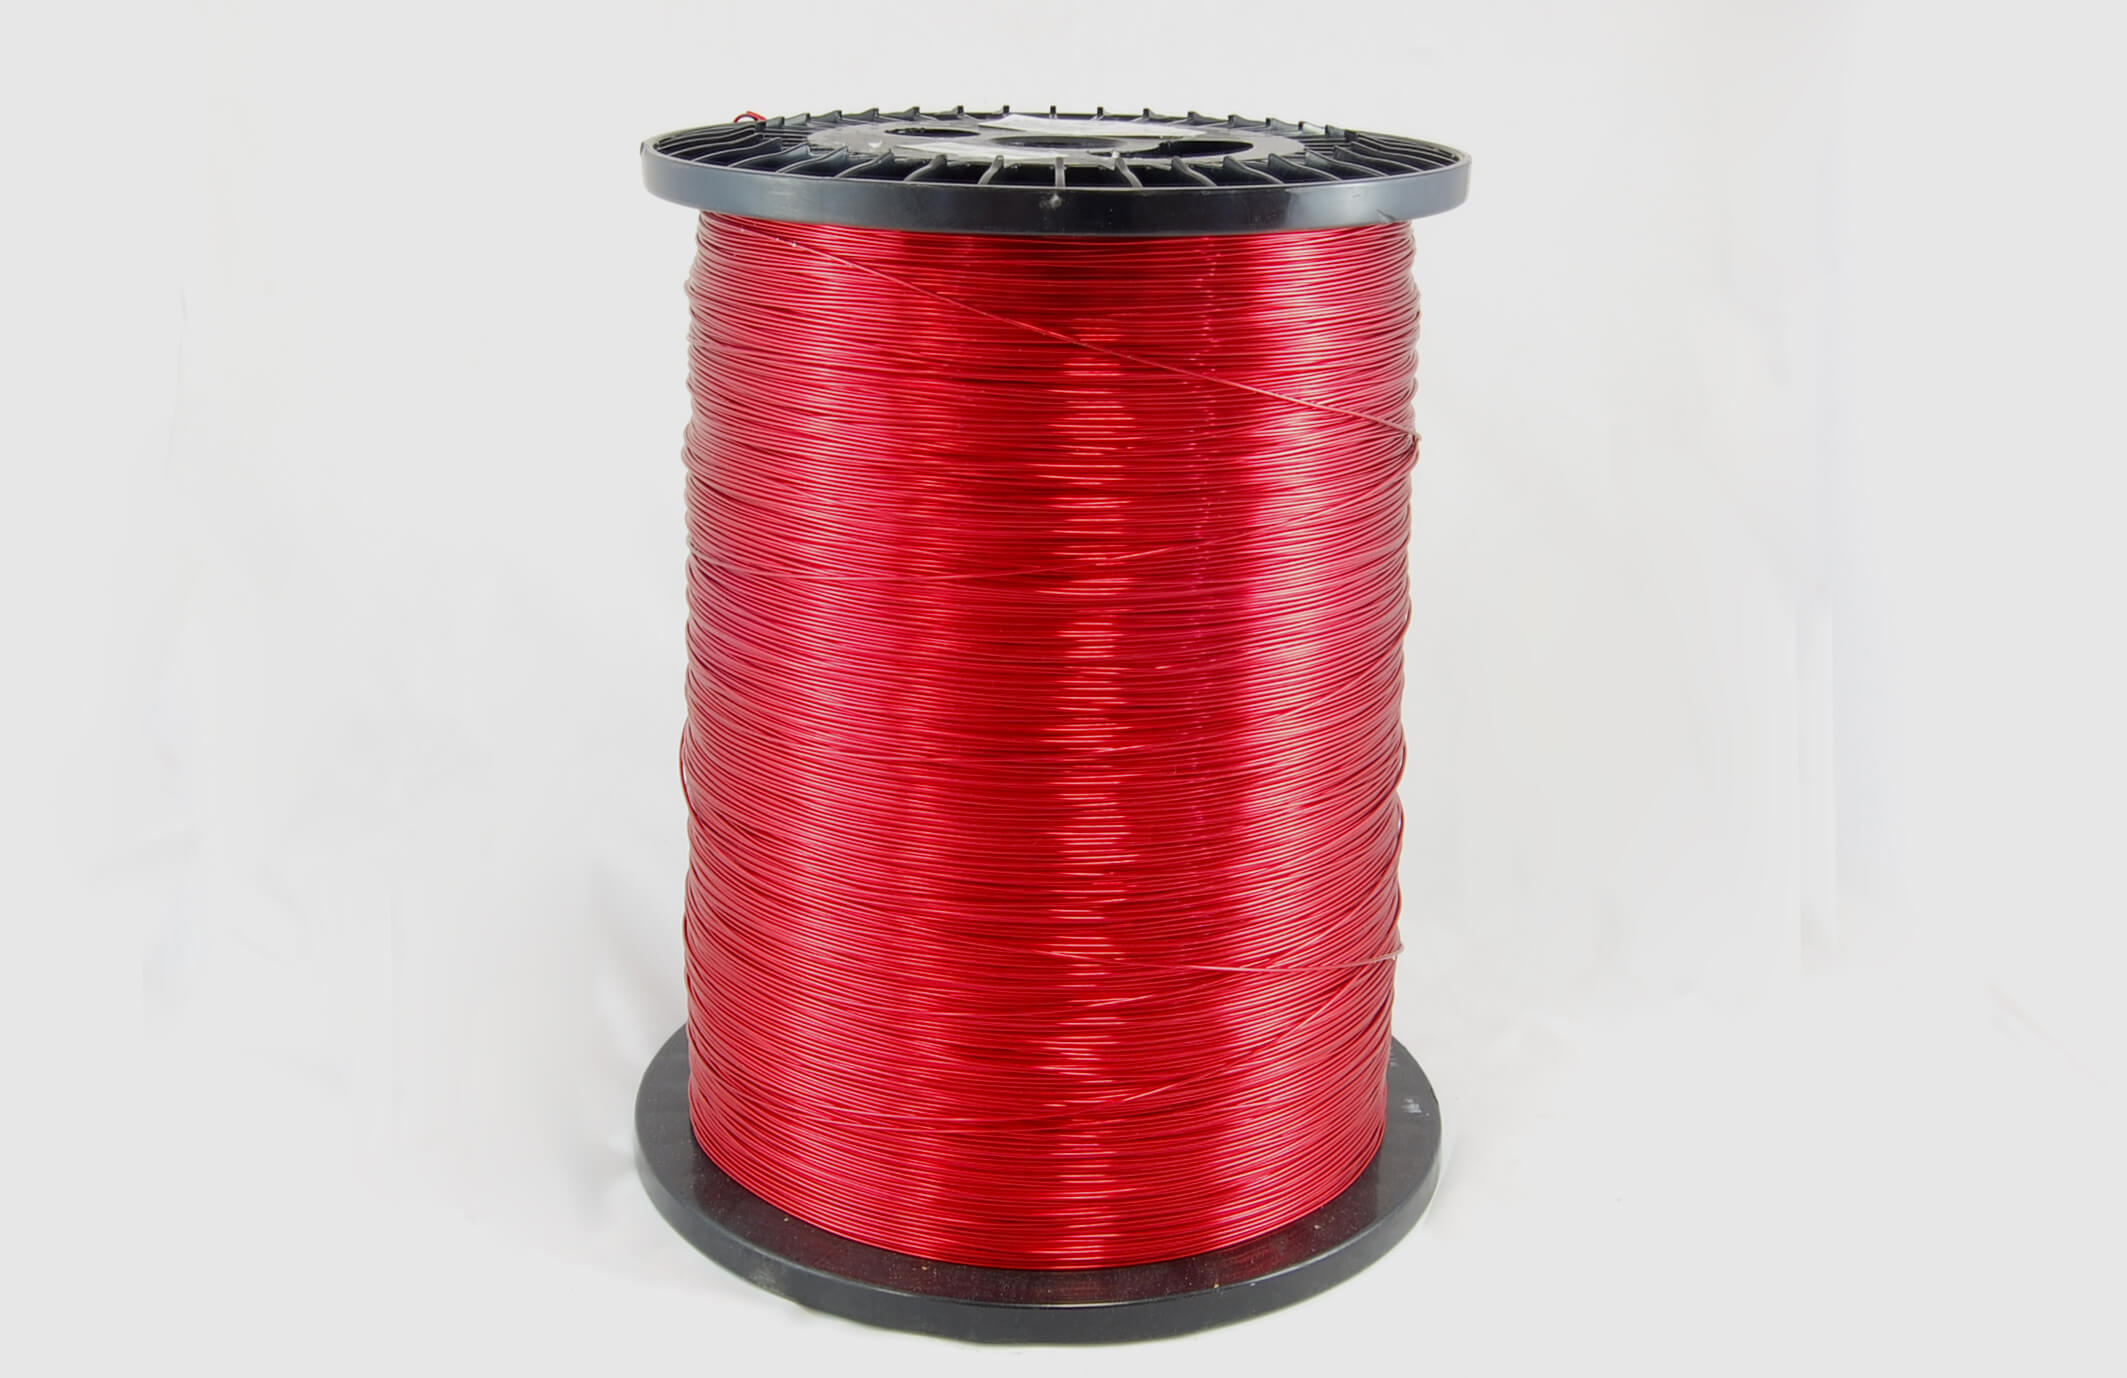 #19 Single Nysol  Round SNSR MW 80 Copper Magnet Wire 155°C, red, 85 LB box (average wght.)